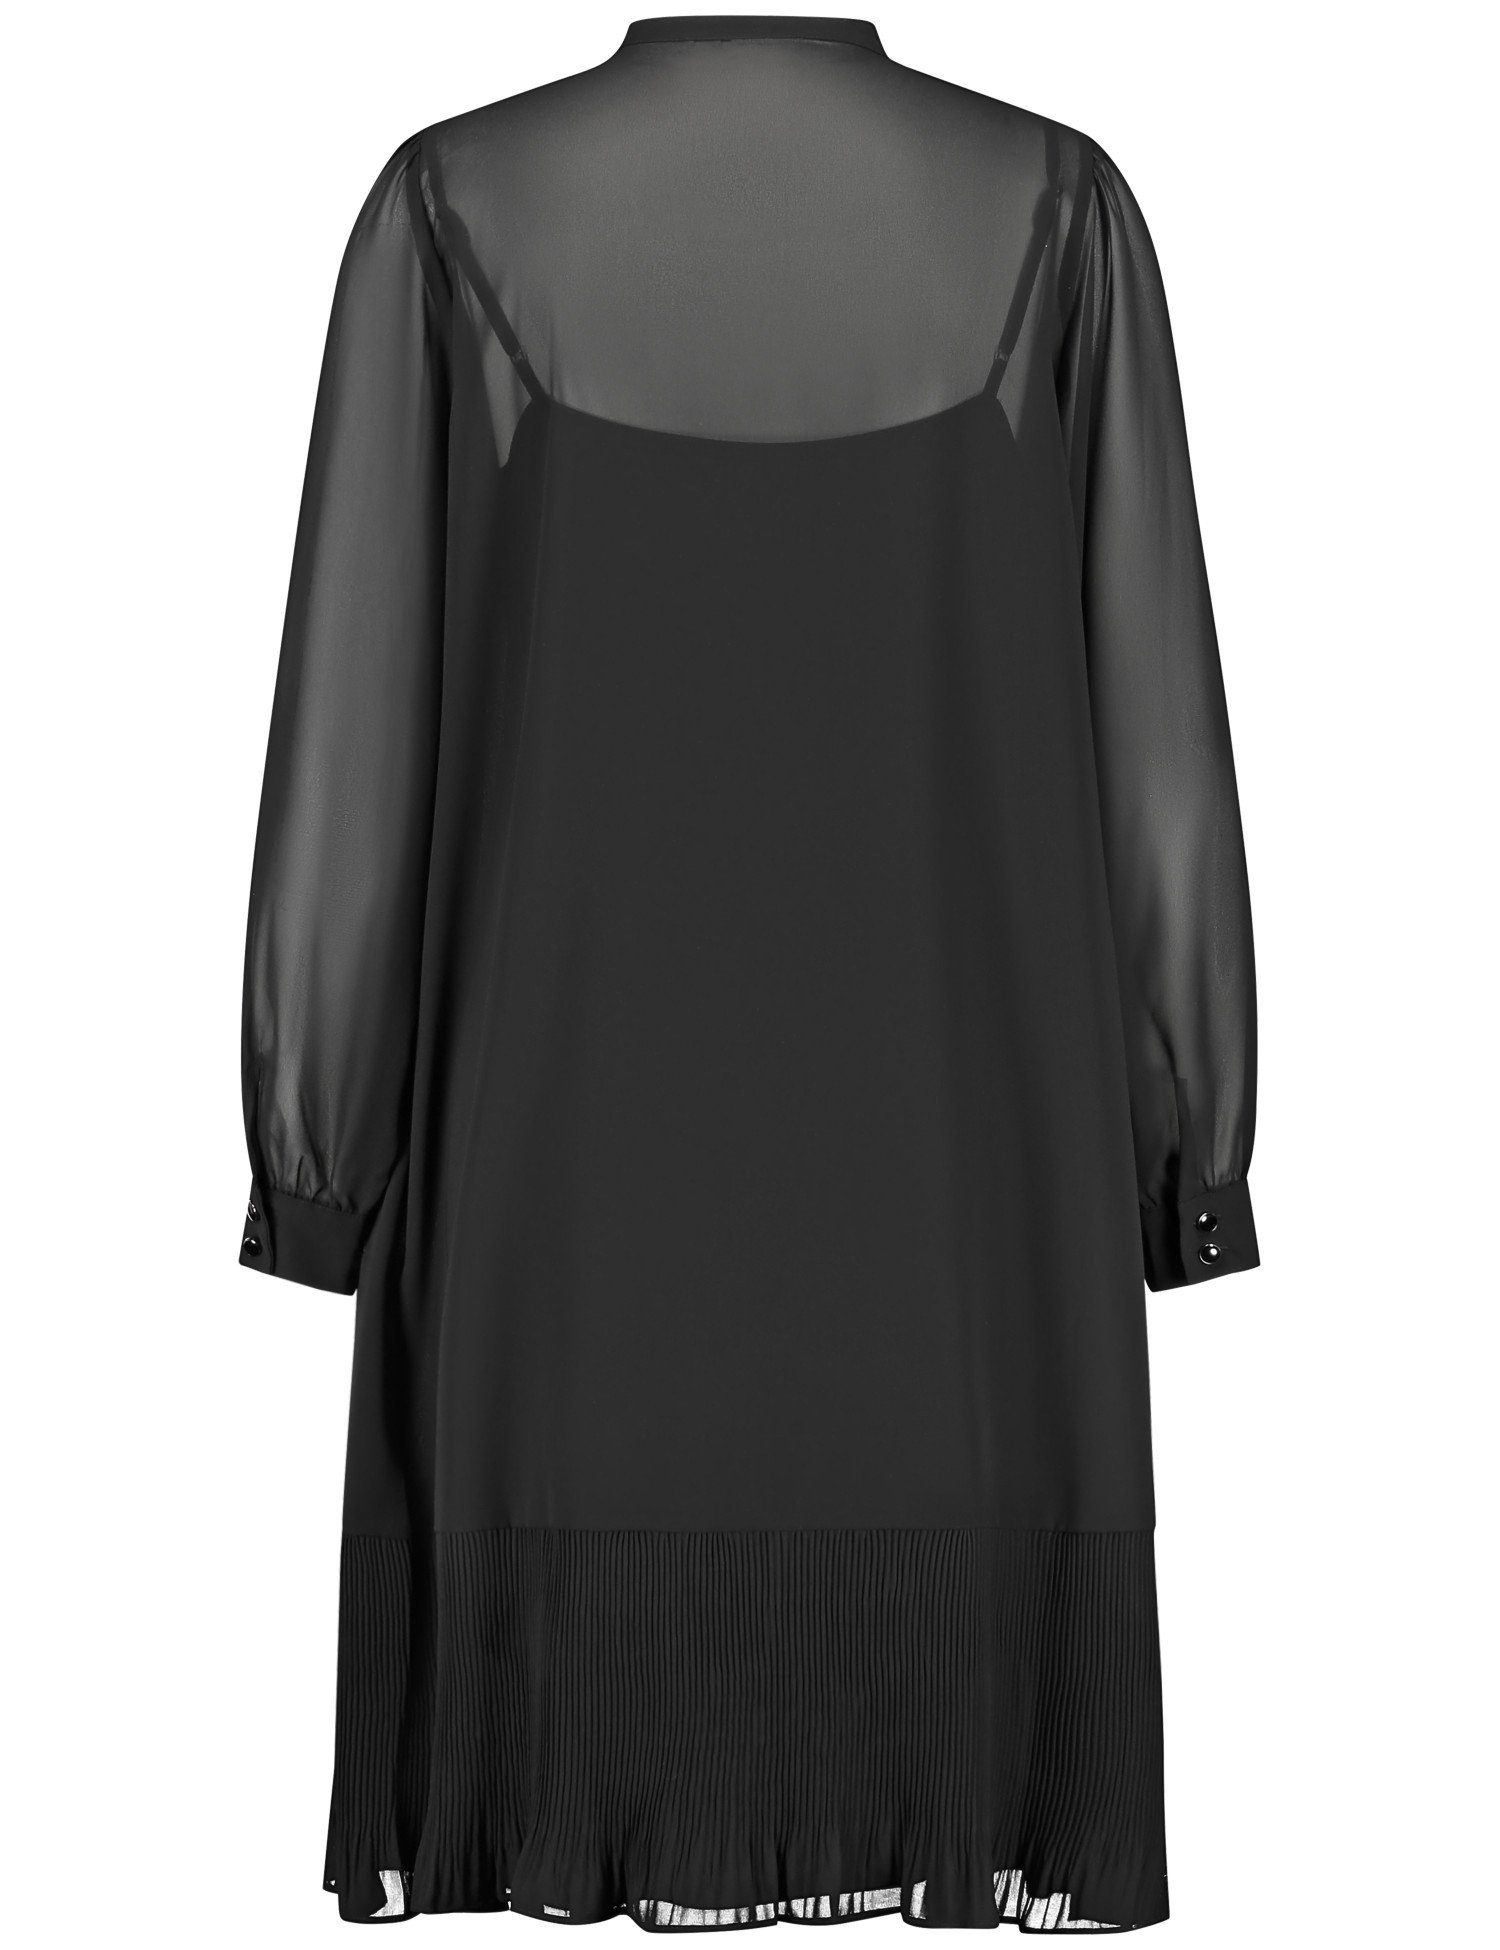 GERRY WEBER Midikleid semitransparentem mit Kleid Schwarz Overlayer Zartes